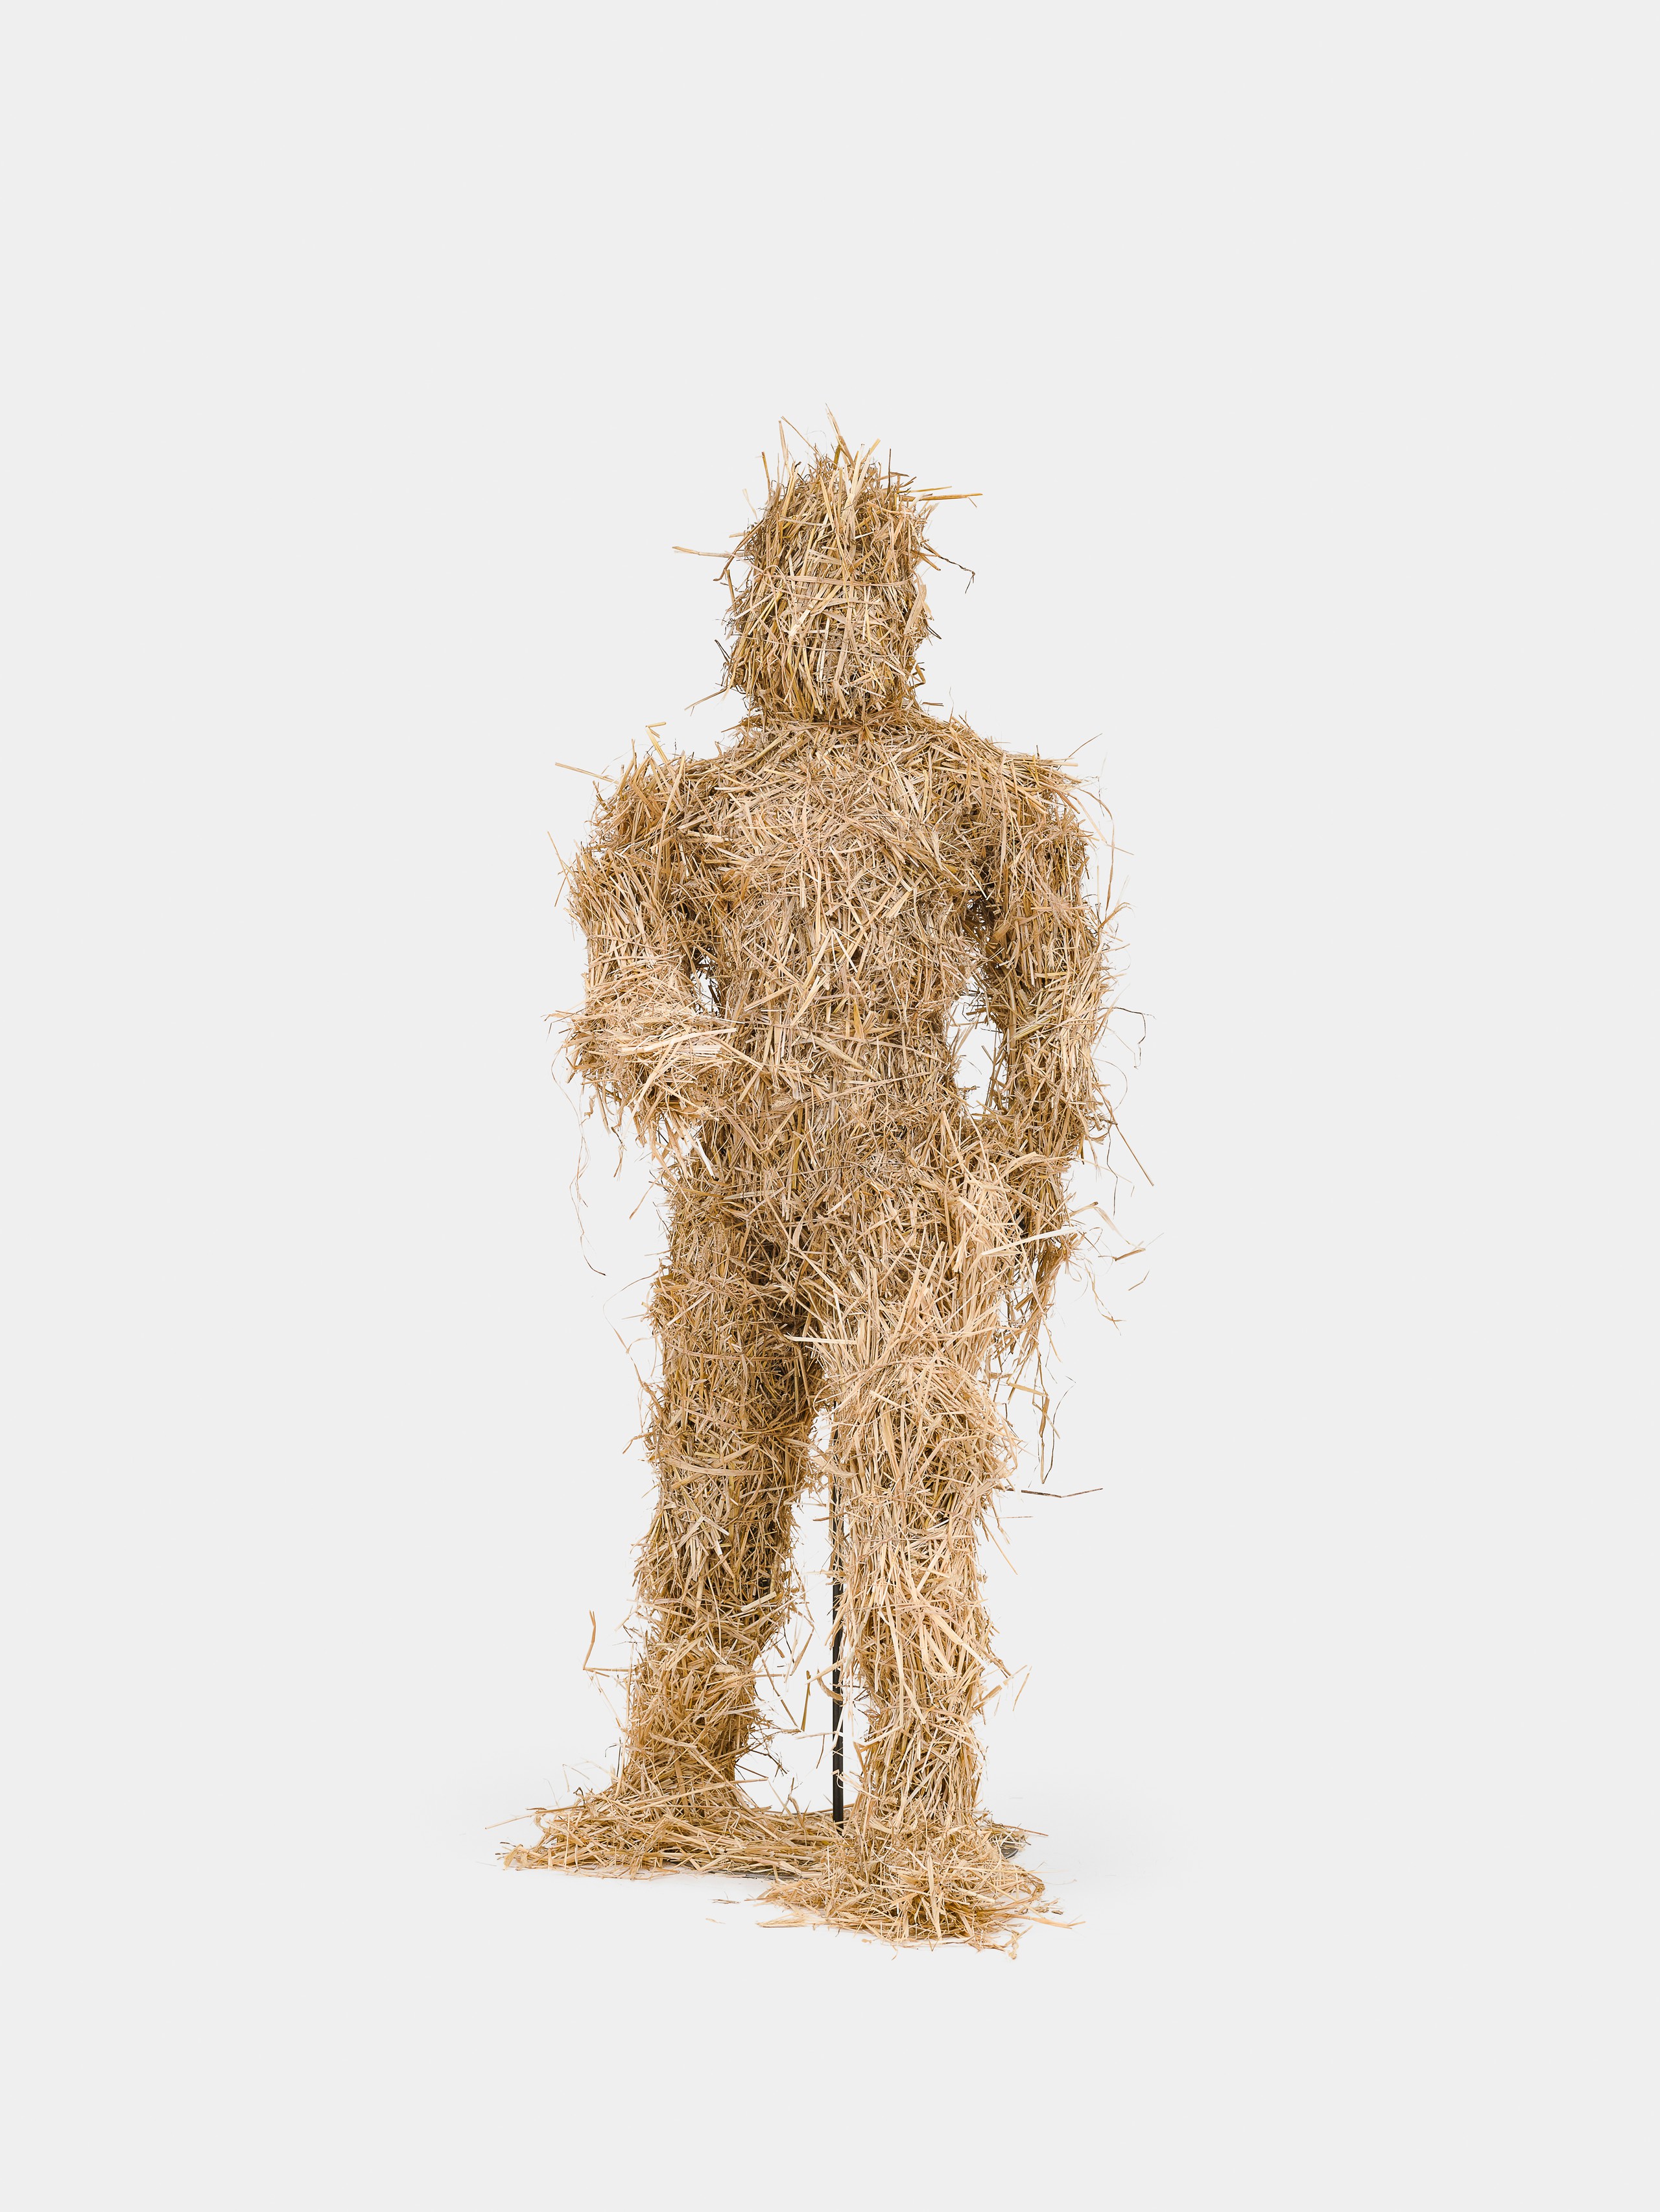 Kaspar Müller, Untitled, 2022, Straw, fiberglass, wood, steel 200 x 80 x 115 cm, 78 1/2 x 31 1/2 x 45 1/2 in